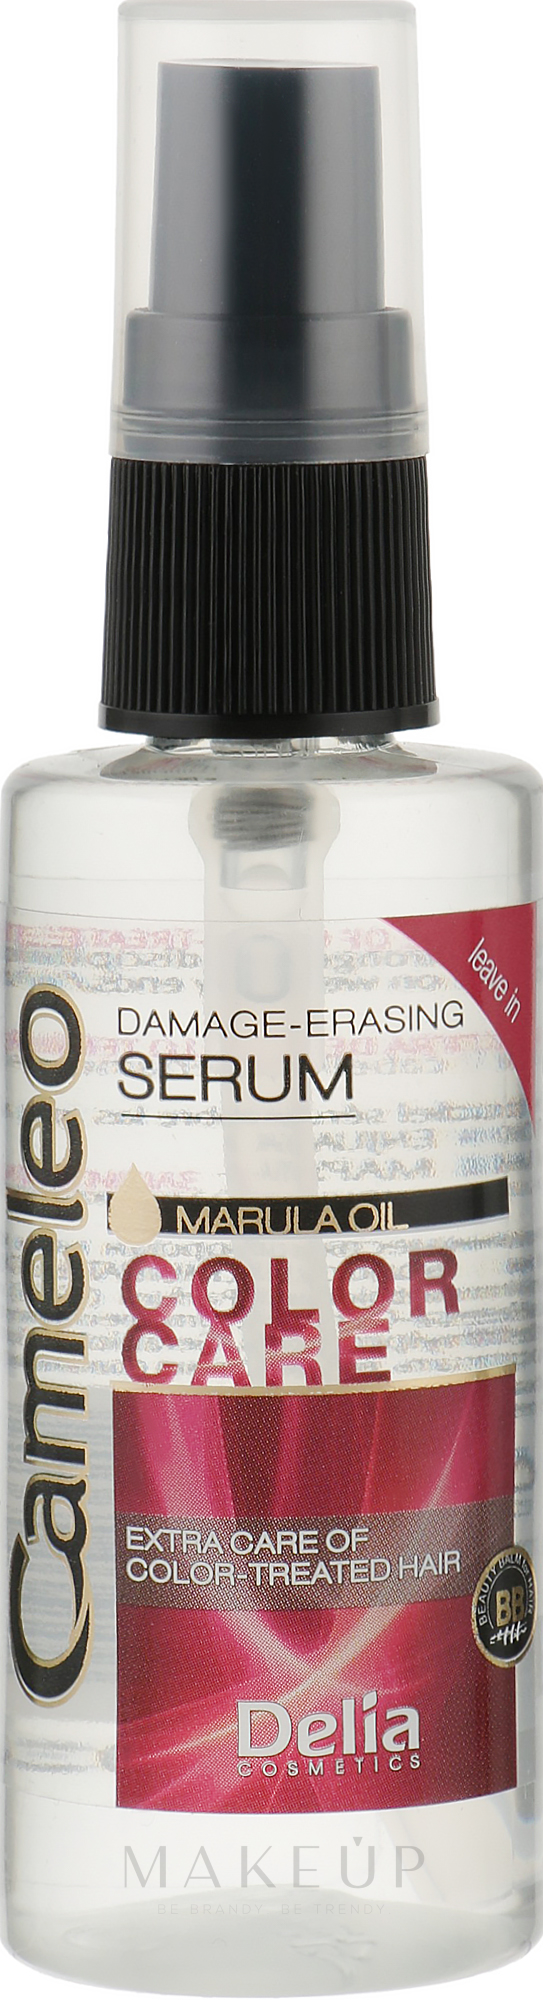 Reparierendes Serum für gefärbtes, aufgehelltes Haar mit Marulaöl ohne Ausspülen - Delia Cameleo Serum — Foto 55 ml